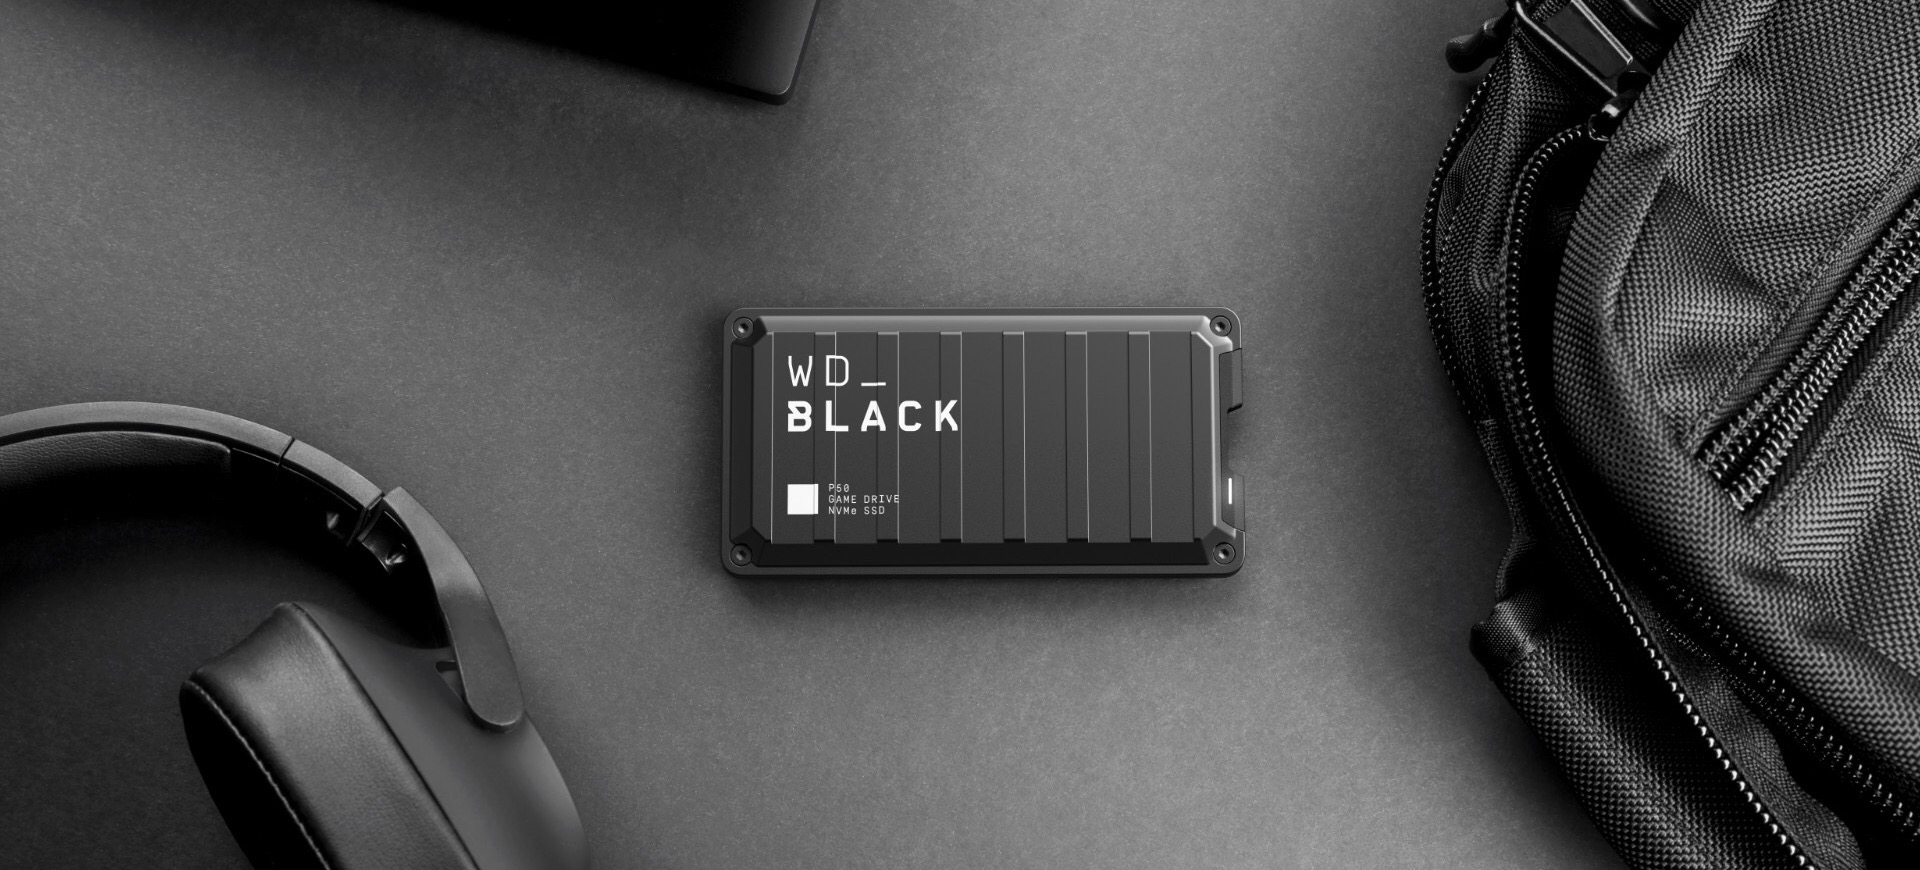 Western Digital ra mắt 5 sản phẩm mới cho dòng WD Black